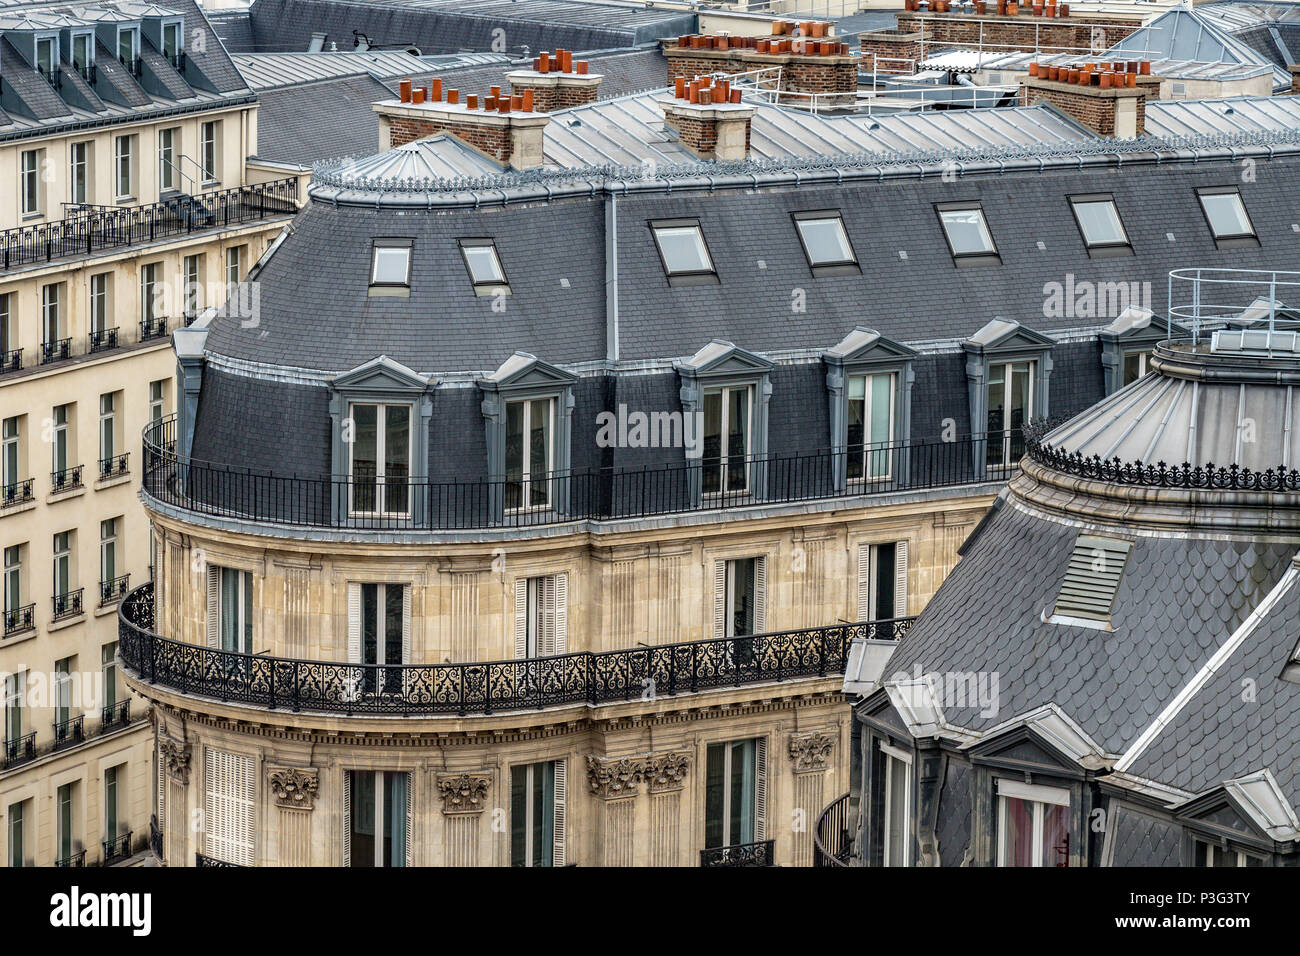 L'élégante ardoise gris toits de Paris les immeubles d'un balcon et de chambres mansardées, Boulevard Haussmann, Paris, France Banque D'Images